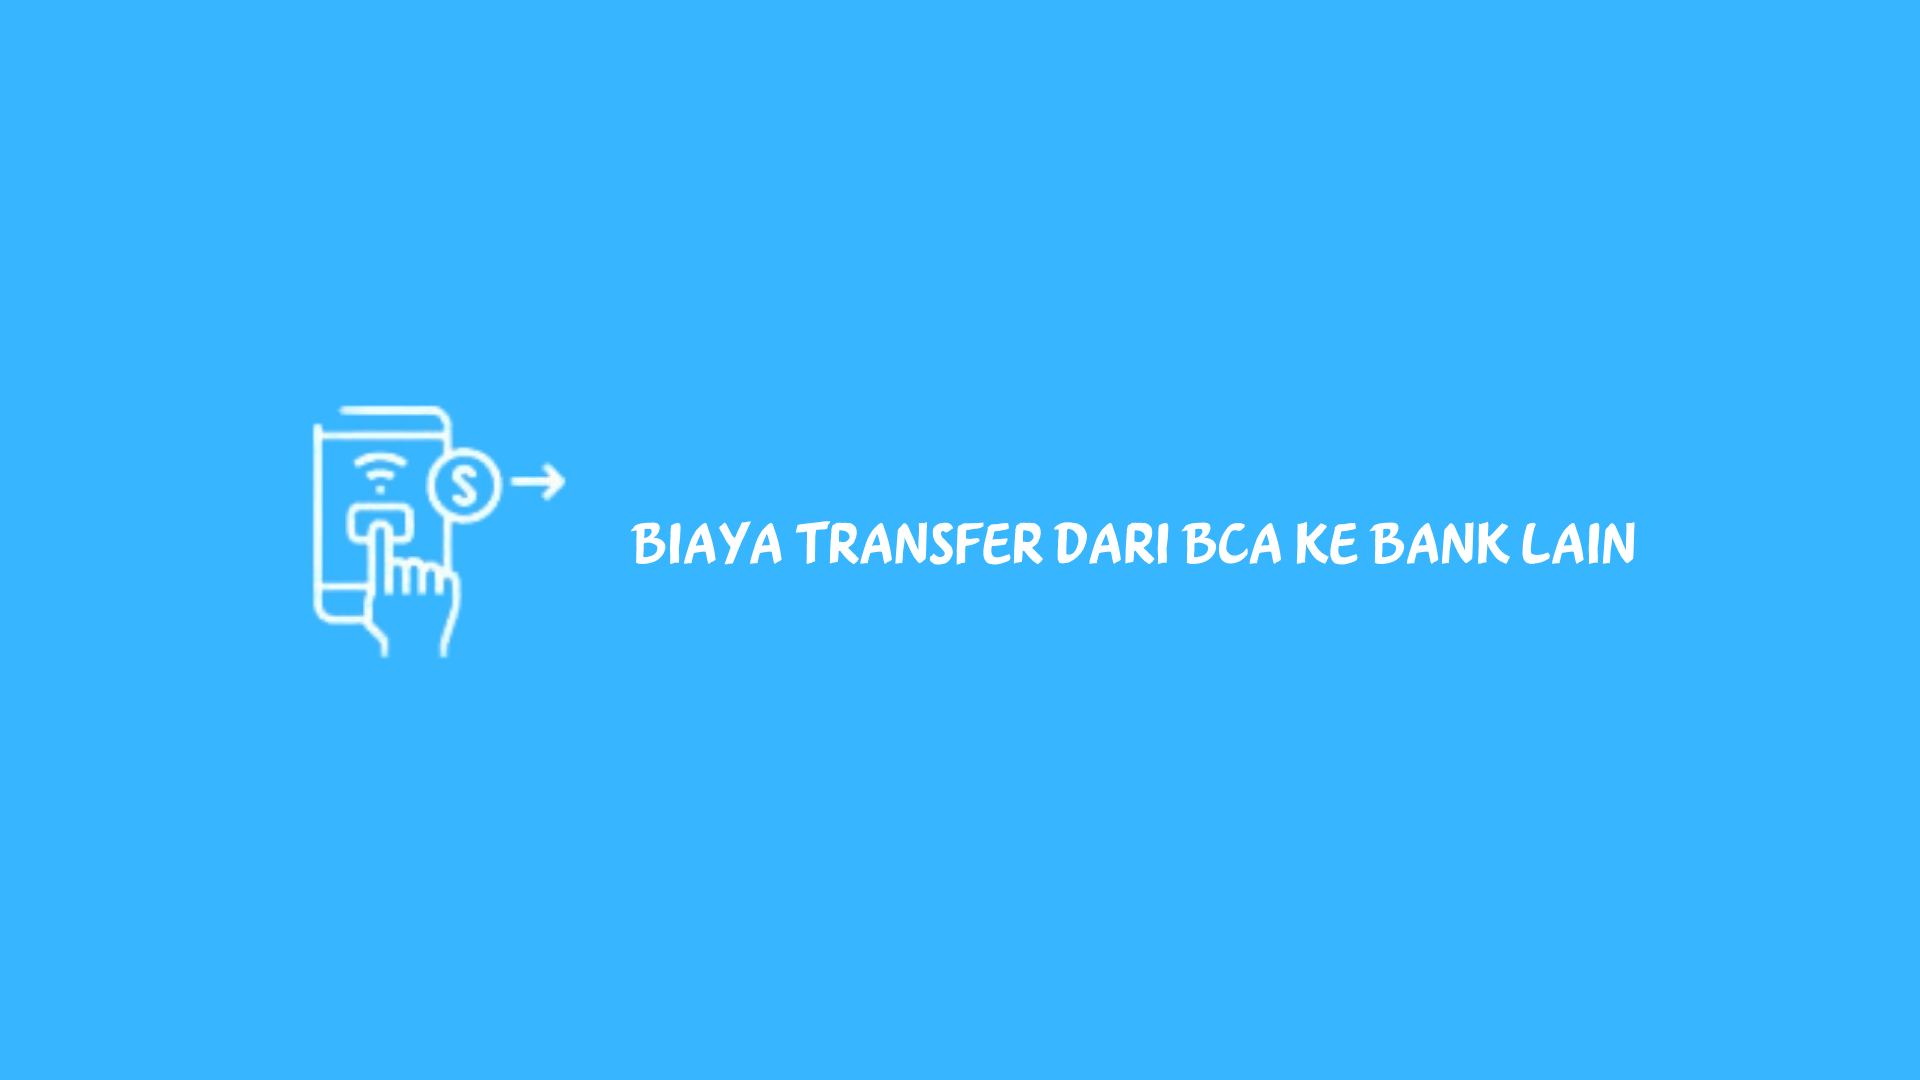 Hal yang biasanya dilakukan adalah transfer uang antar rekening atau transfer uang ke rekening bank lain. Berapa biaya transfer dari BCA ke bank lain?